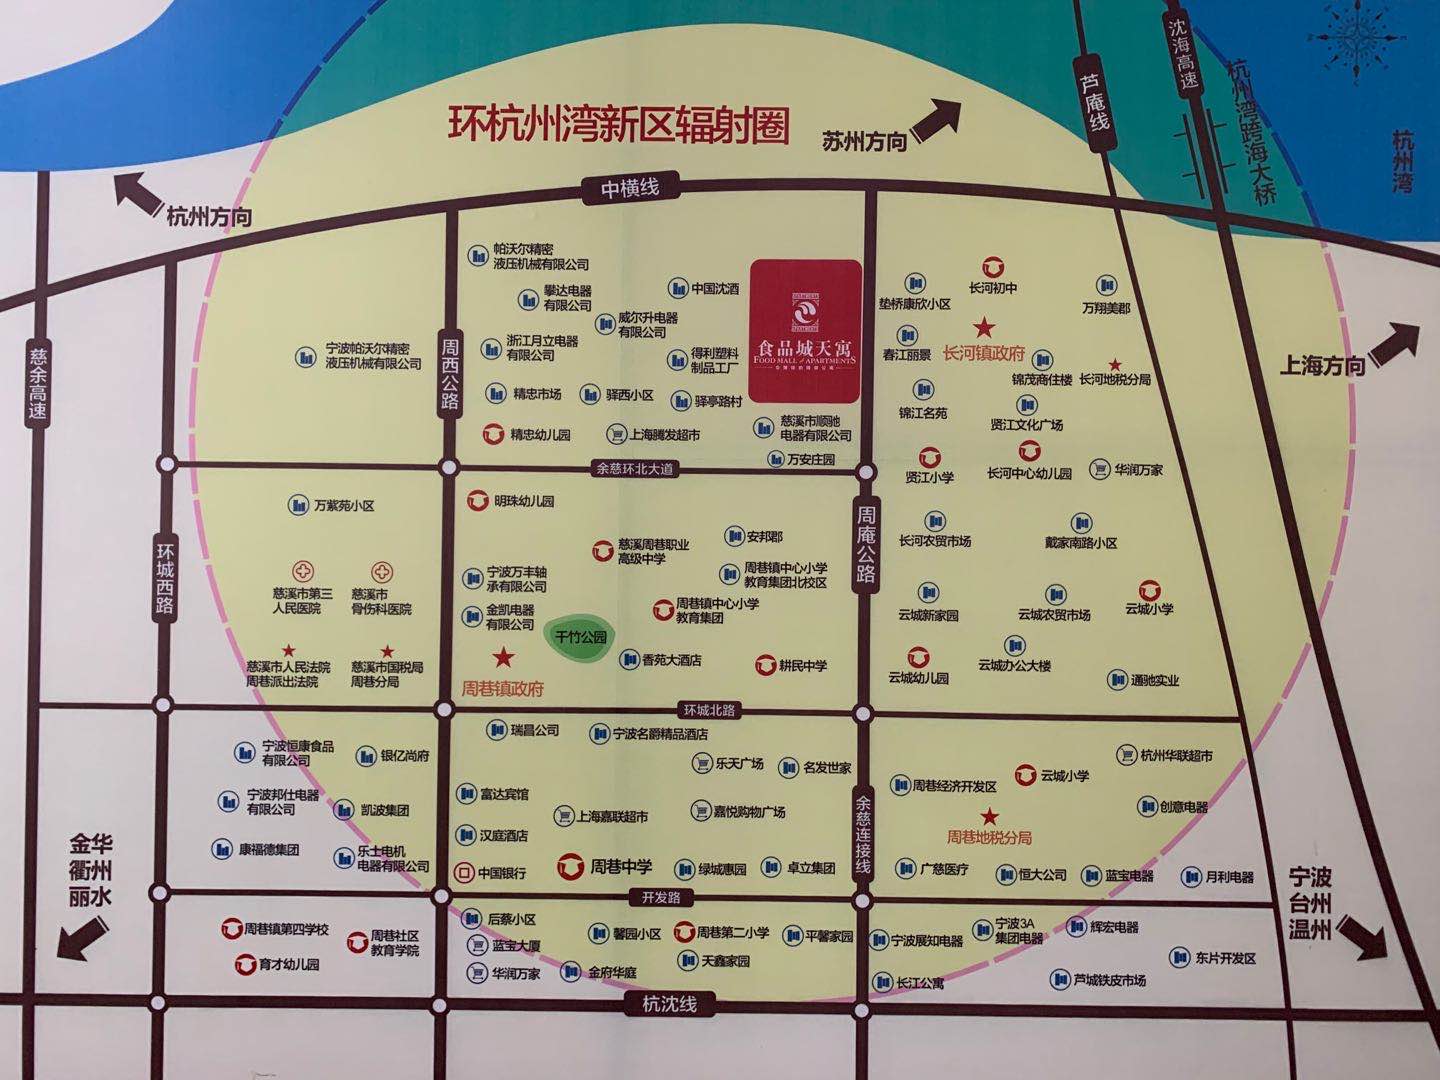 中国食品城天寓交通图-小柯网